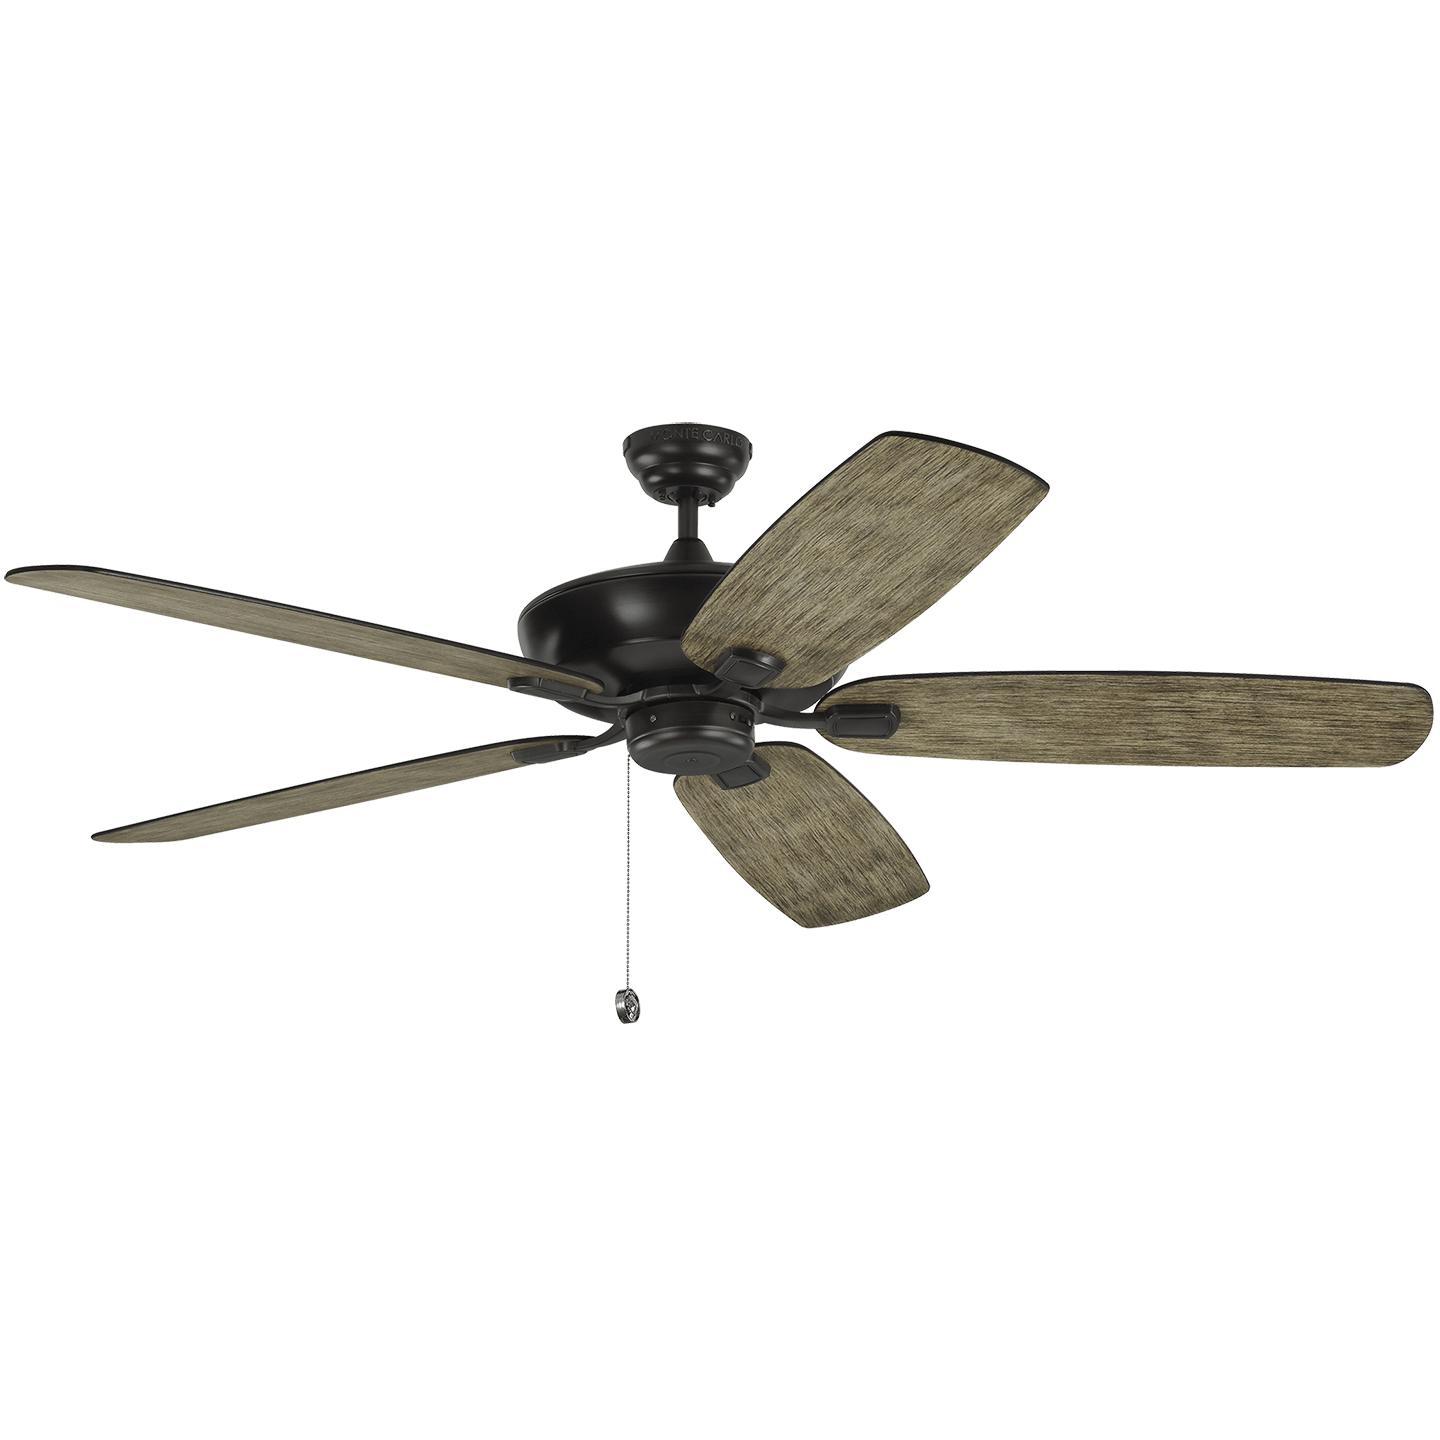 Купить Потолочный вентилятор Colony 60" Ceiling Fan в интернет-магазине roooms.ru